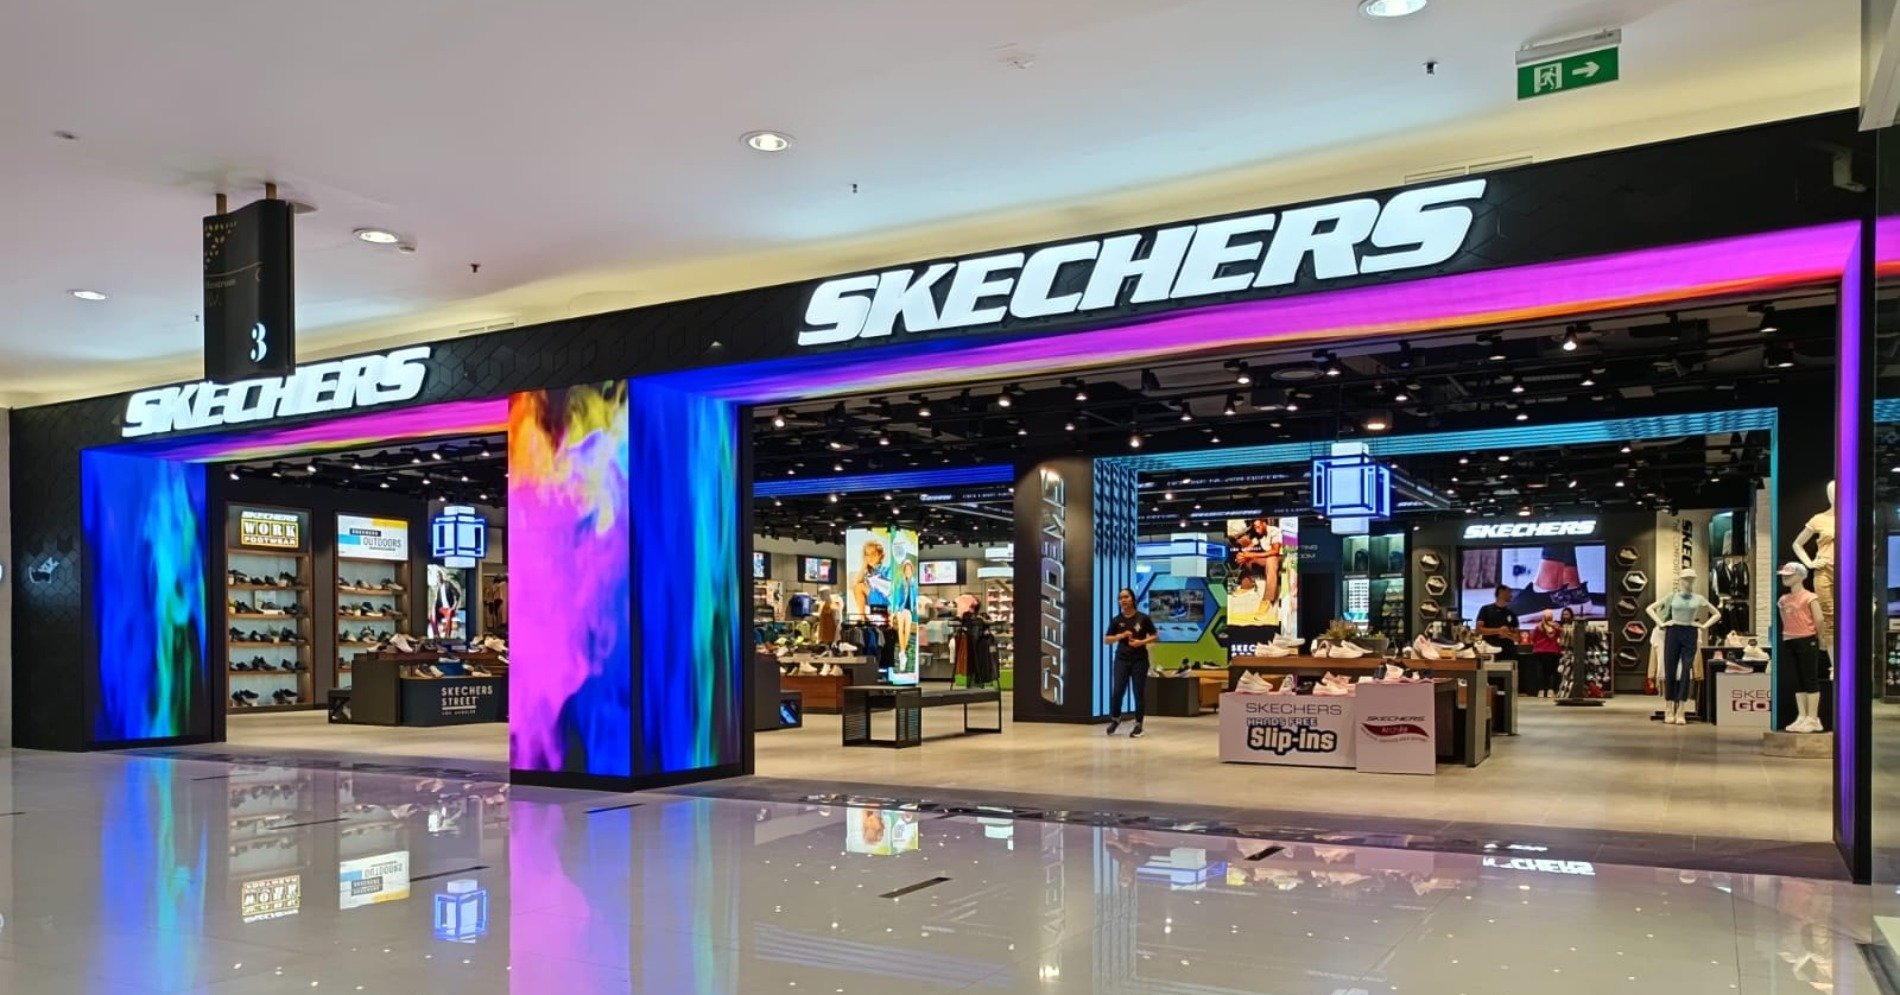 Toko Skechers terbesar di Indonesia, Lantai 3 Senayan City Mall, Jakarta. (Sumber foto : Skechers)